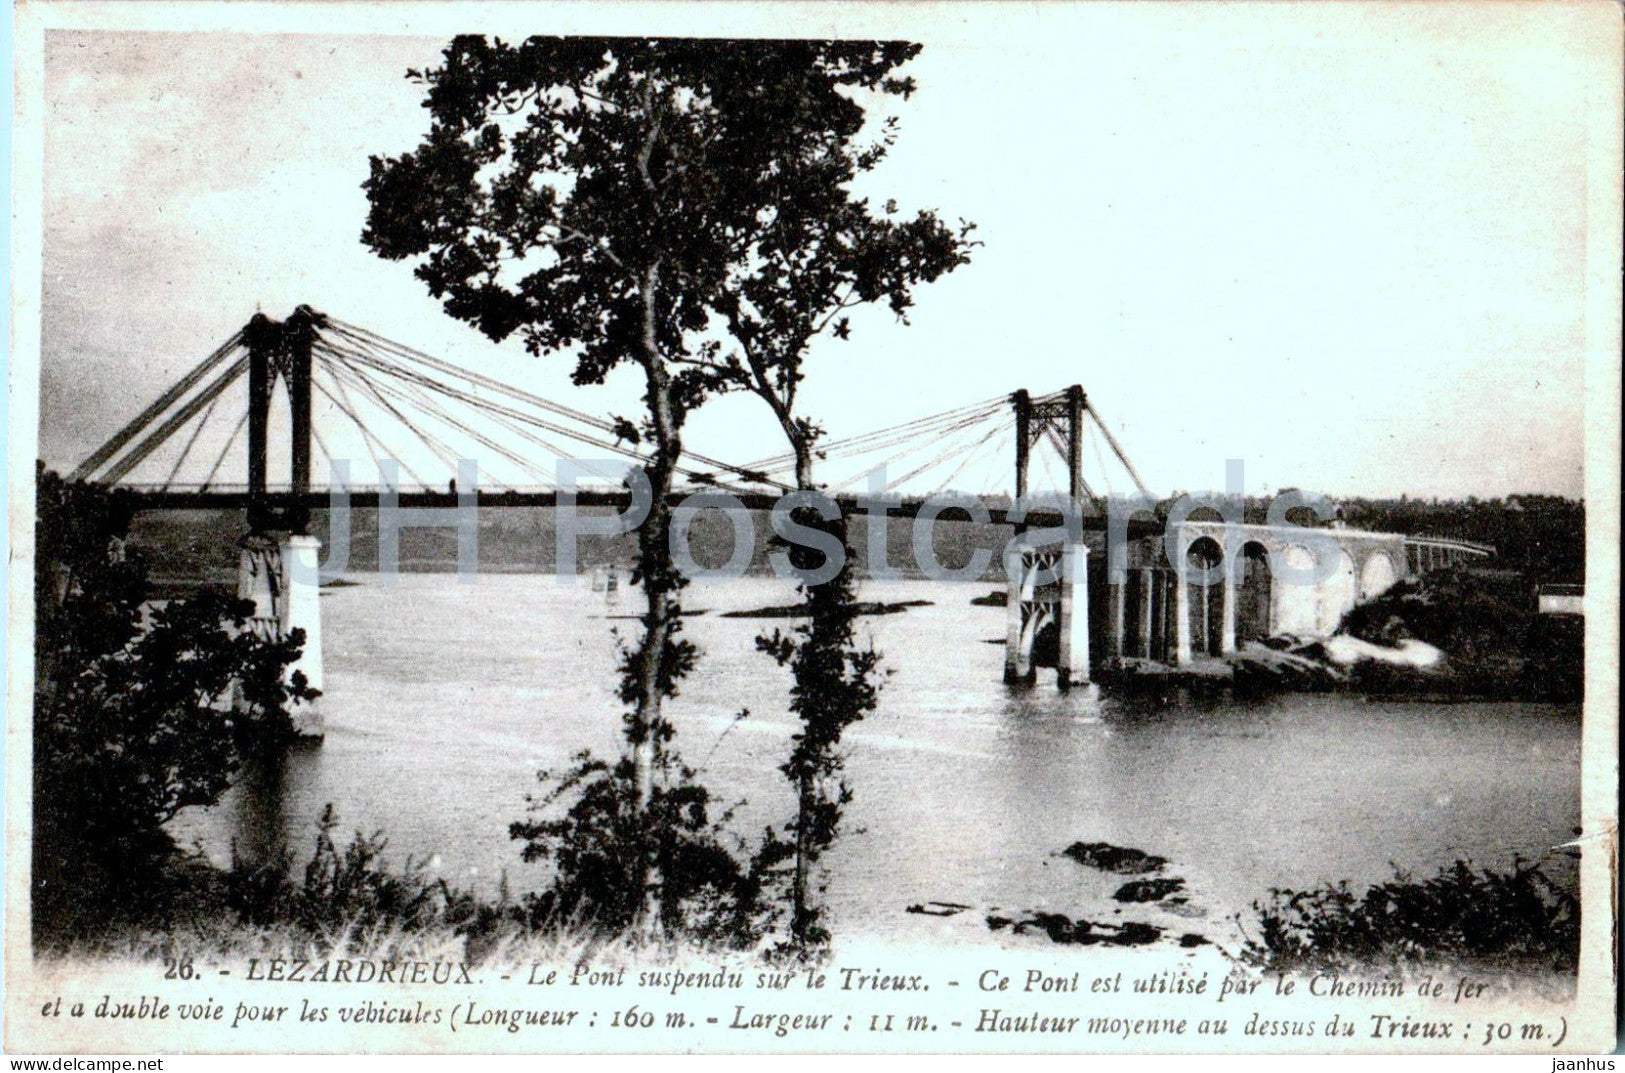 Lezardrieux - Le Pont suspendu sur le Trieux - bridge - 26 - old postcard - 1928 - France - used - JH Postcards